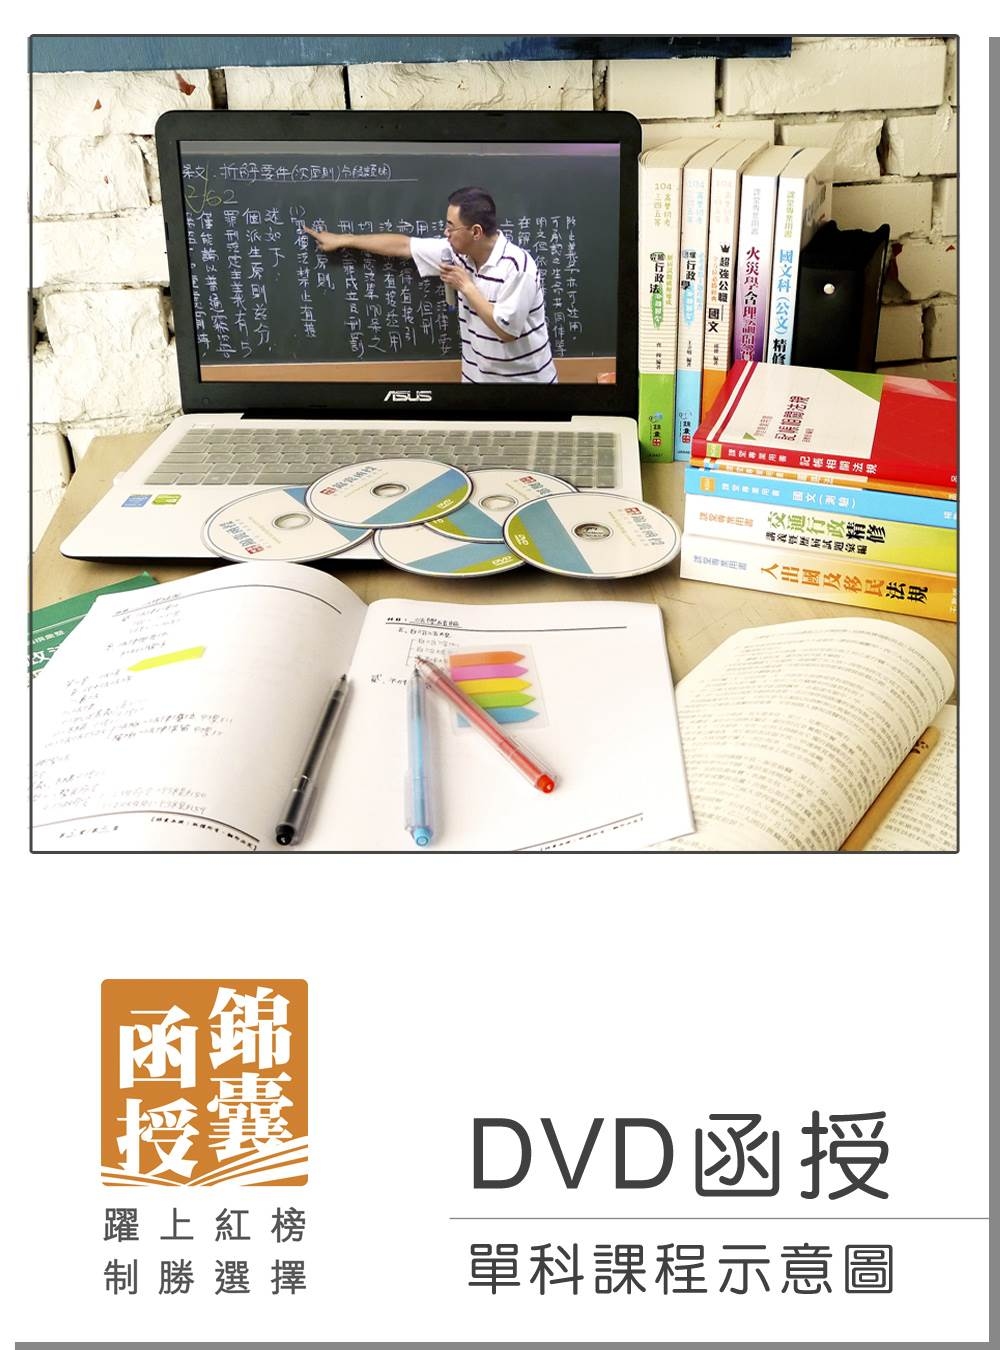 【DVD函授】國籍與戶籍法規(正規班&進階班)-單科課程(105版)